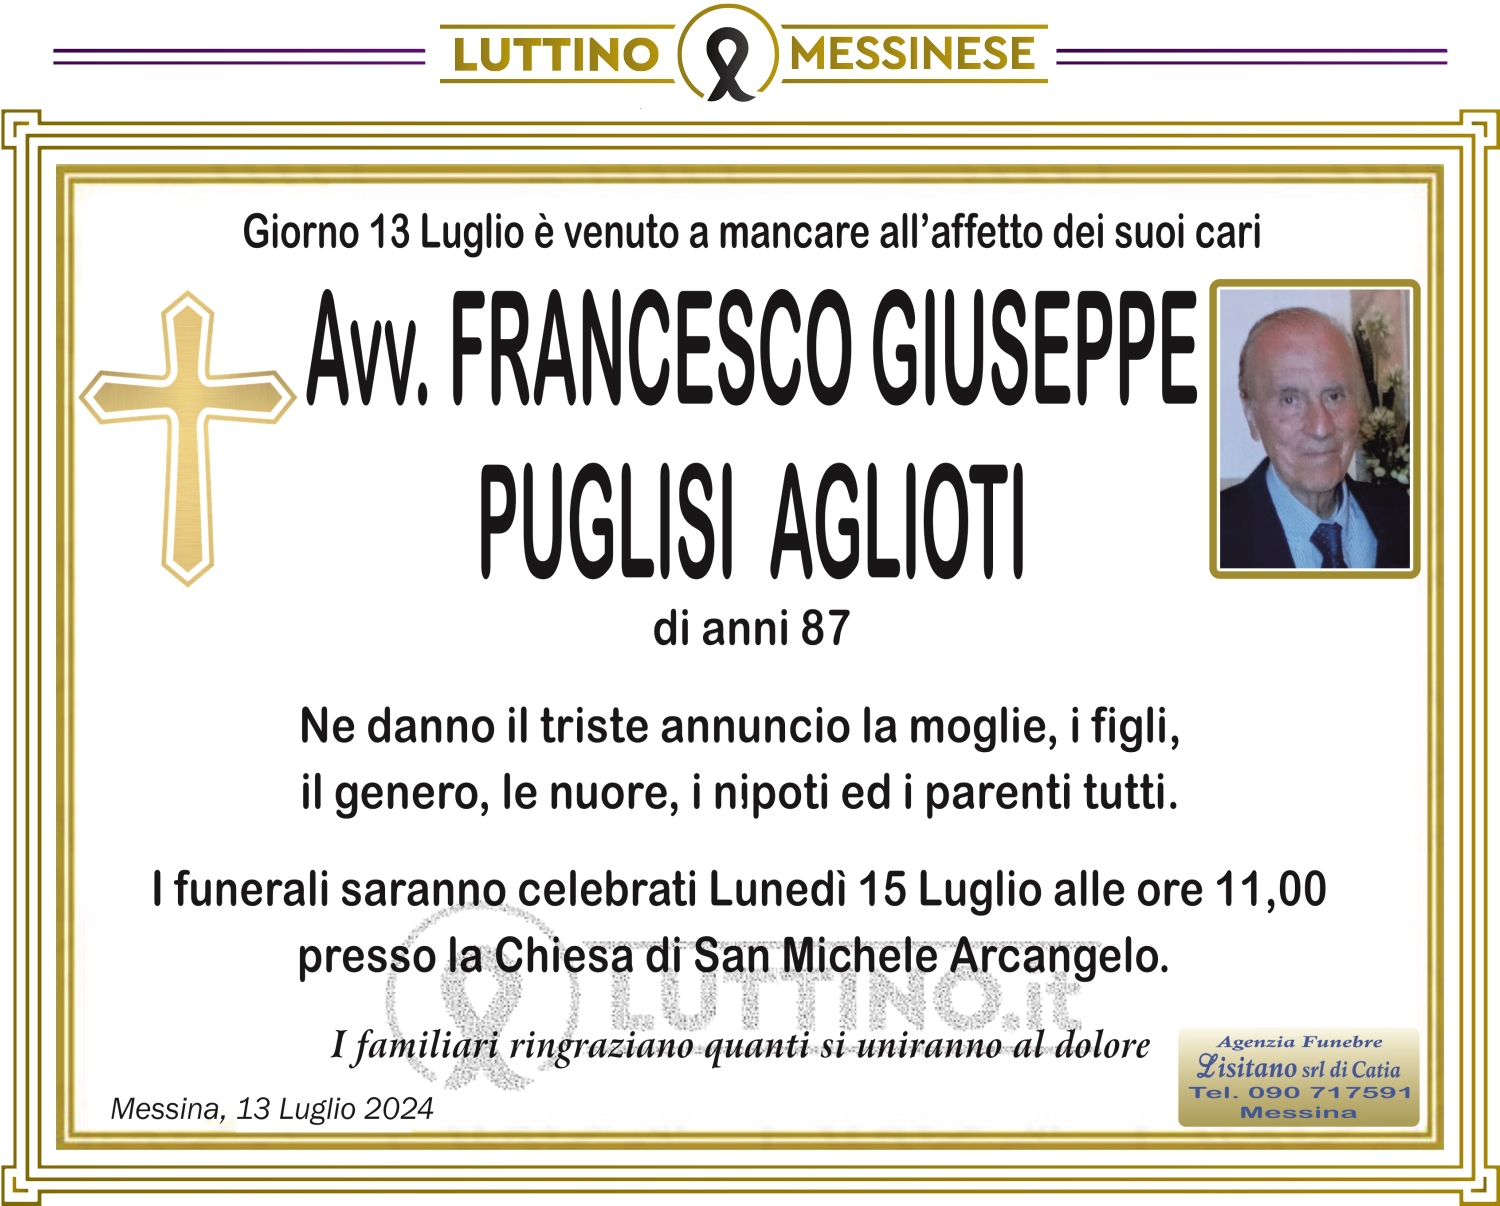 Francesco Giuseppe Puglisi Aglioti